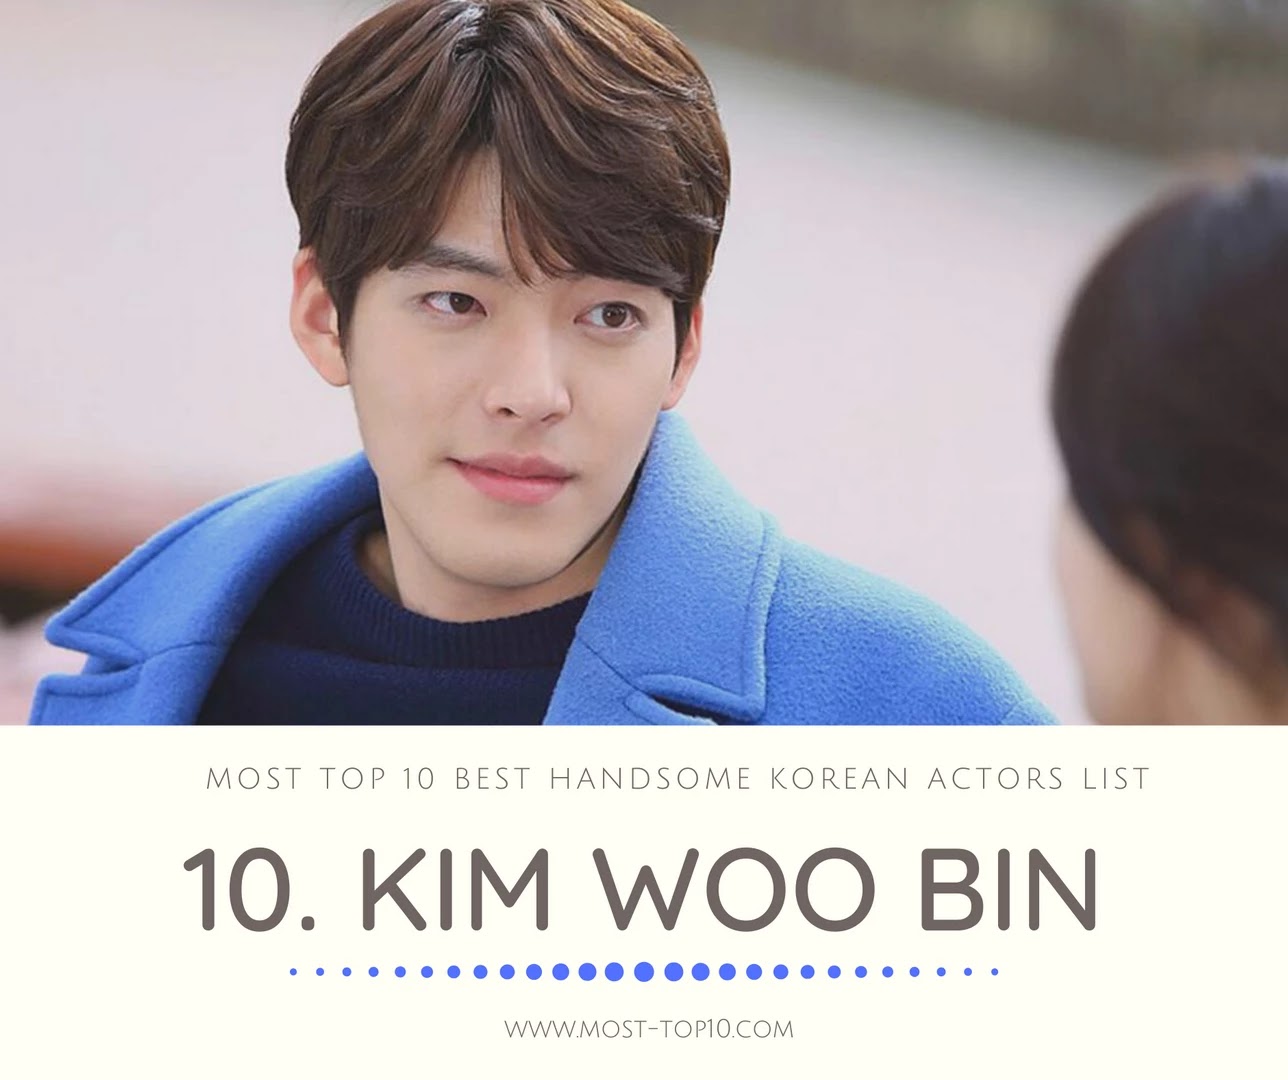 Most Top 10 Best Handsome Korean Actors List